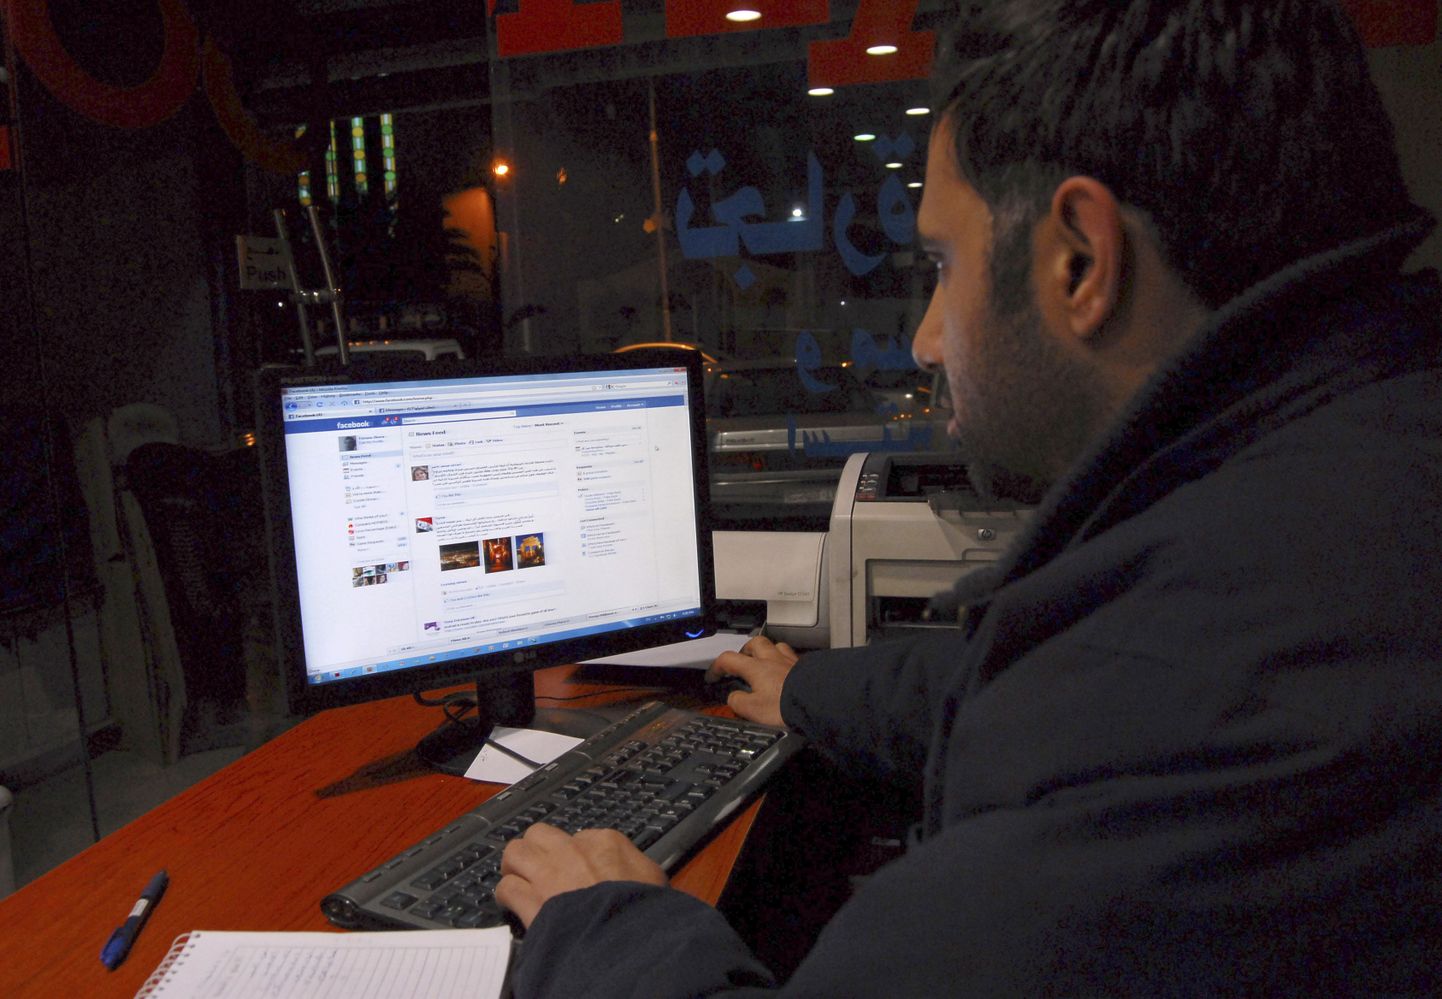 Süüria mees pealinna Damascuse internetikohvikus Facebooki külastamas.